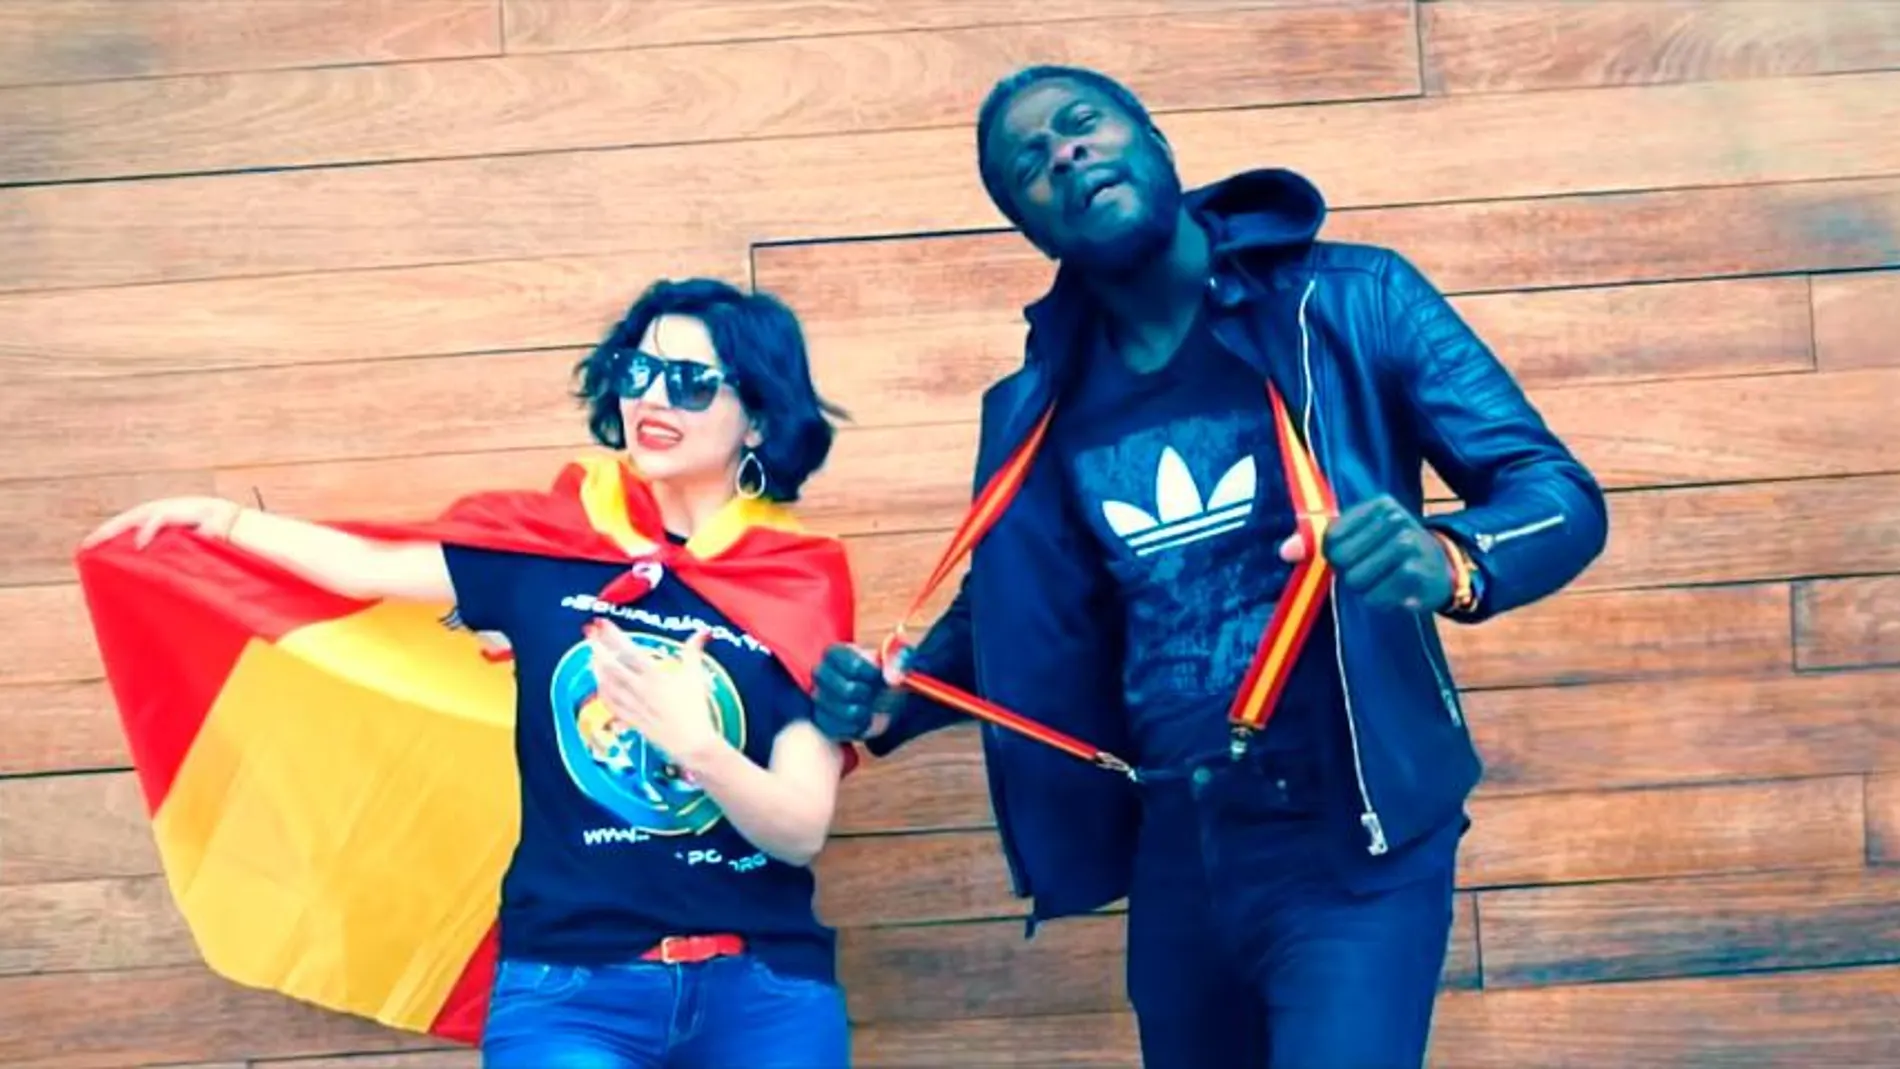 Sofía Rincón y Bertrand Ndongo en un fotograma del videoclip de “Superfacha”